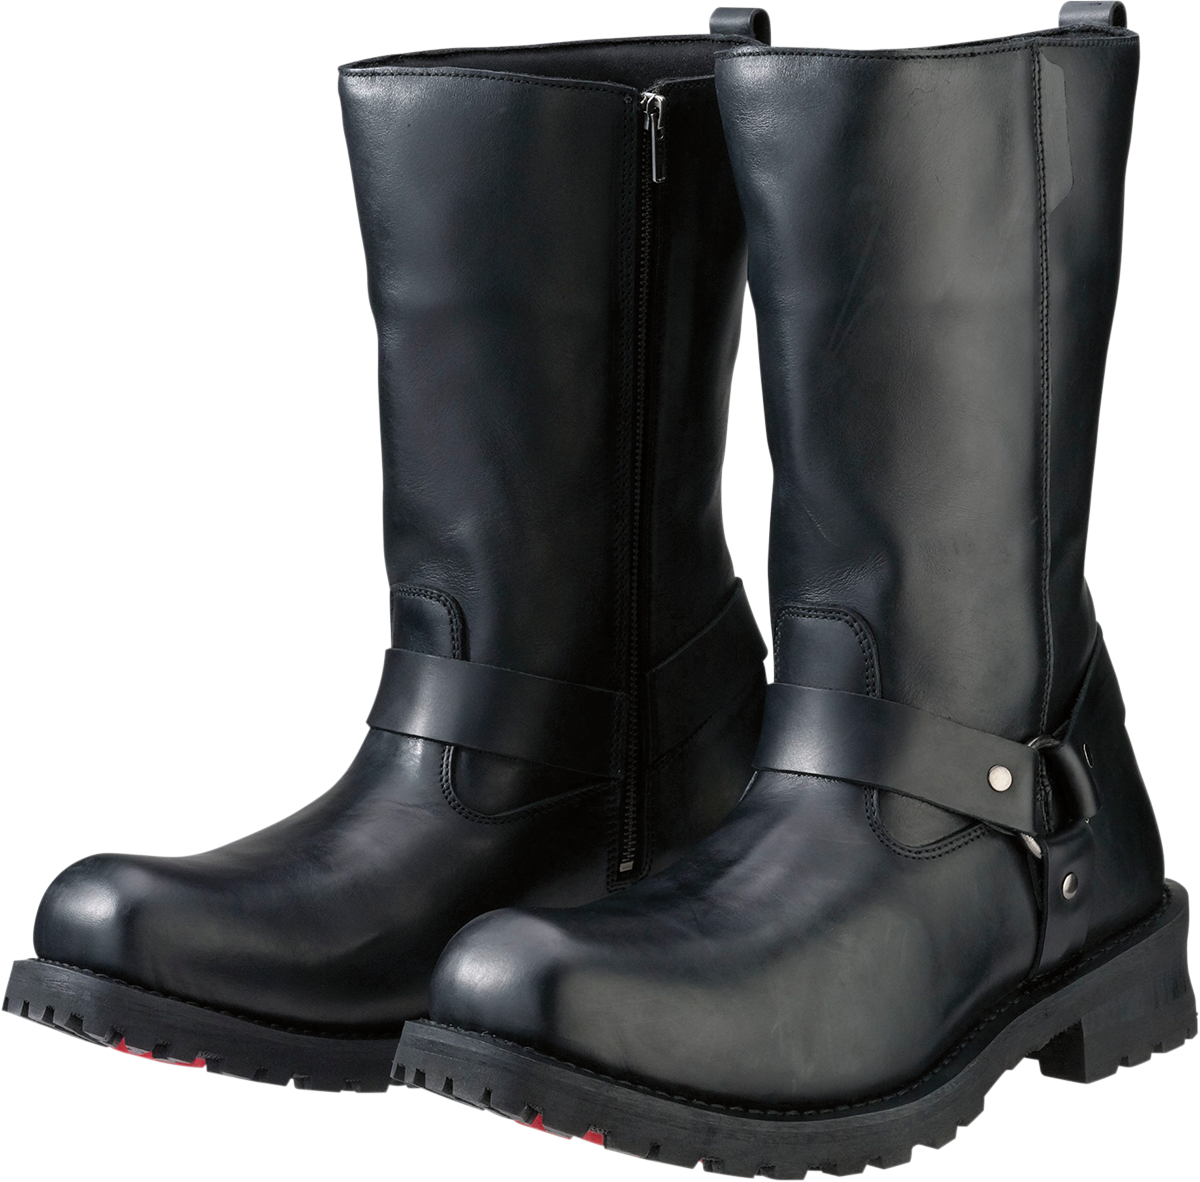 Z1R Riot Boots - Black - US 7 3403-0751